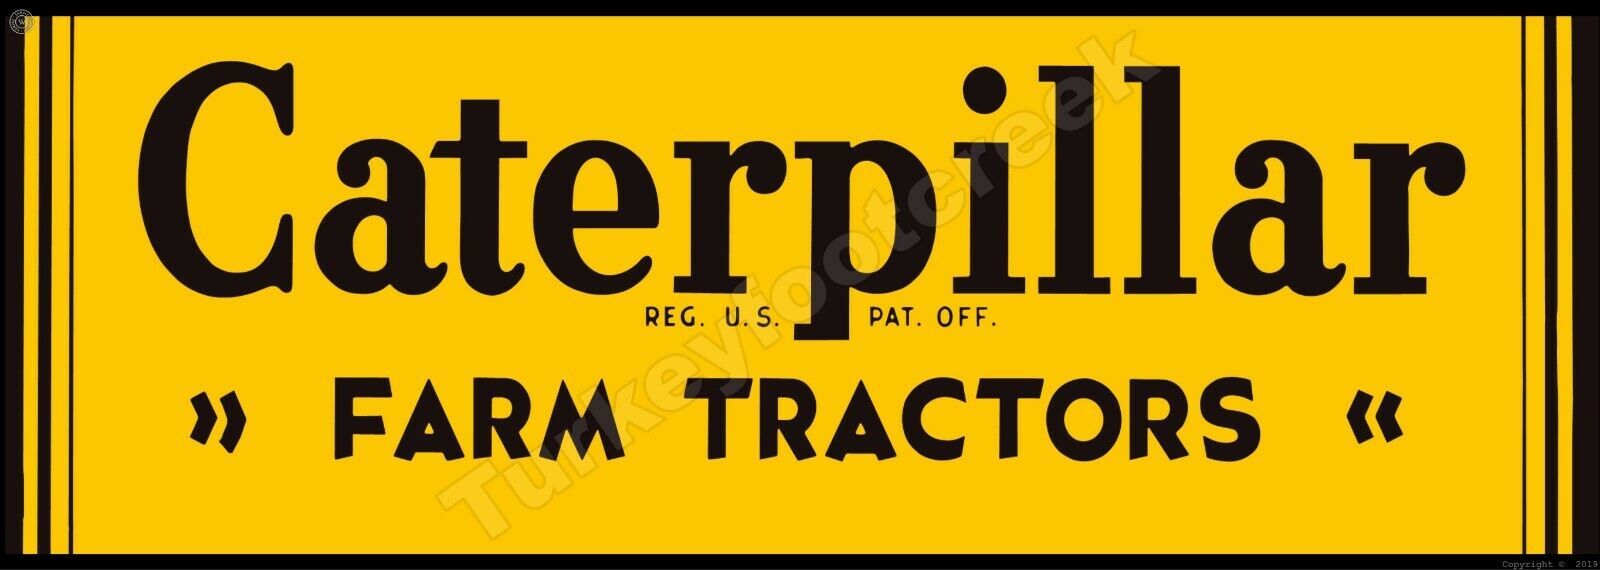 Caterpillar Farm Tractors 6\